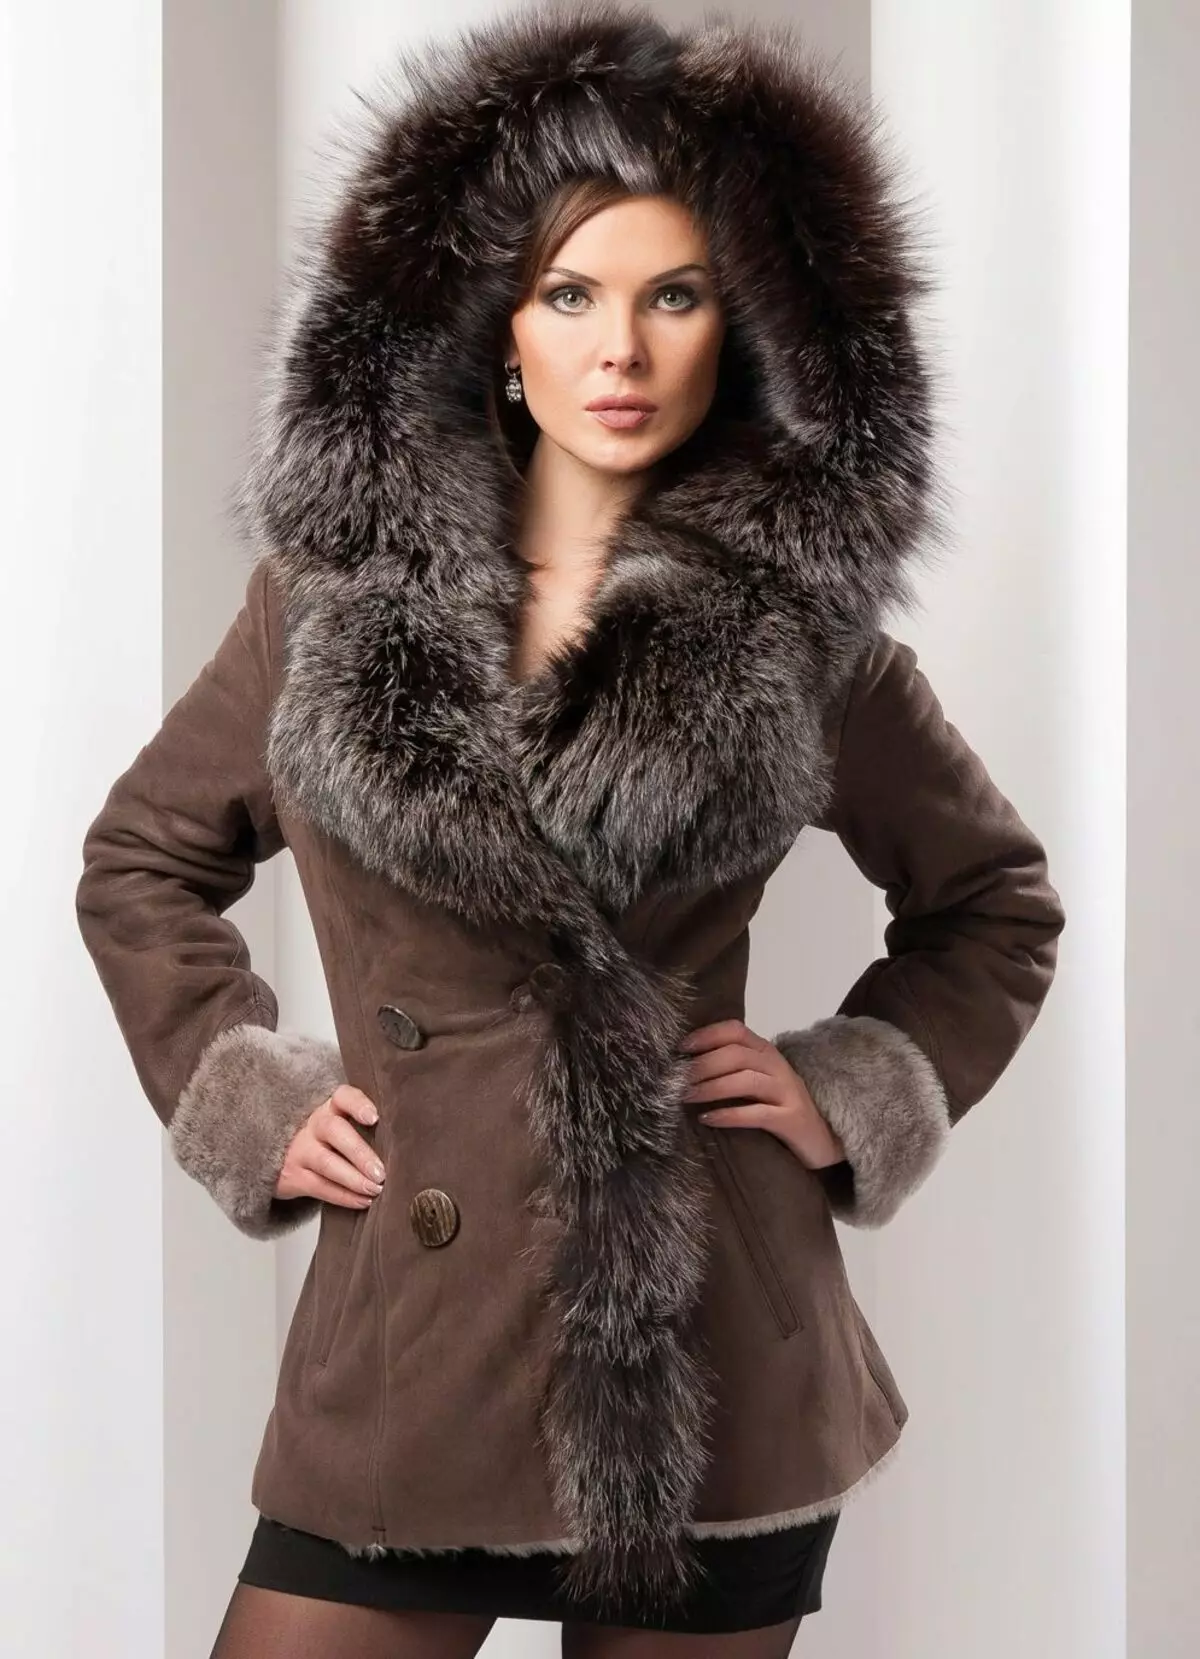 Lo que es un abrigo de piel el más cálido (77 fotos): lo que más caliente, más fácil y práctico, que más cálido: chaqueta hacia abajo, abrigo o abrigo de piel 734_30